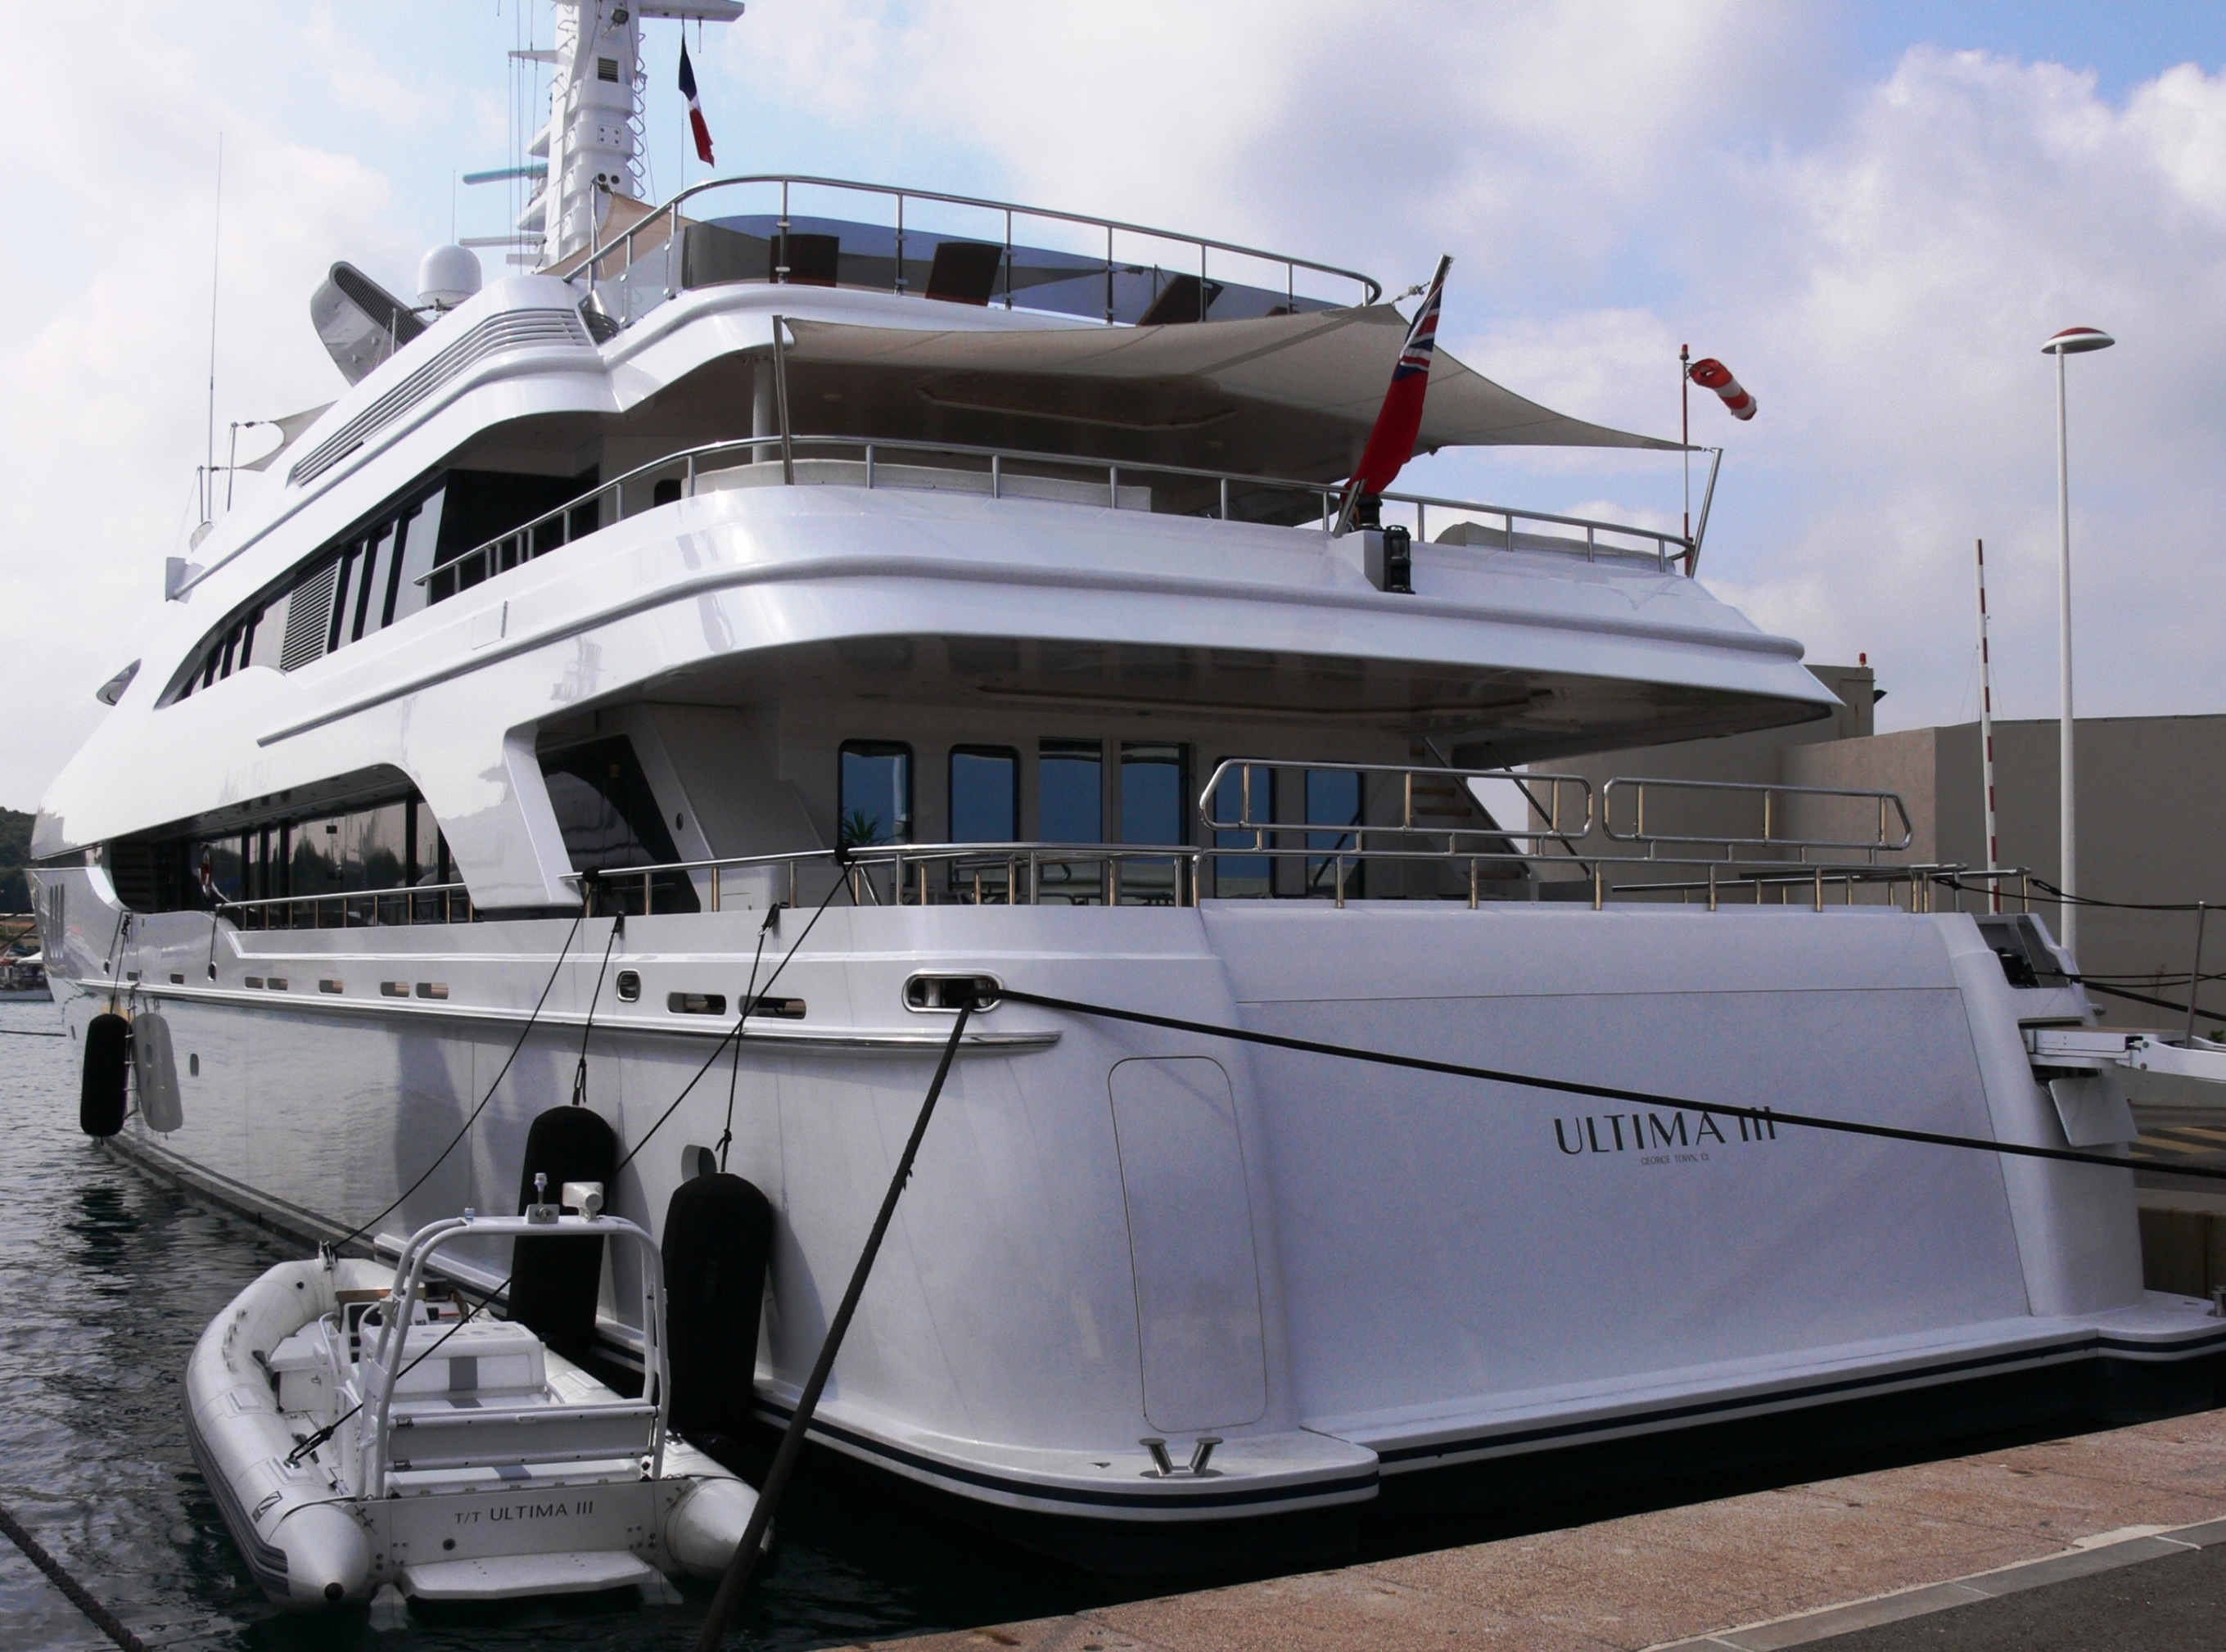 ultima iii yacht